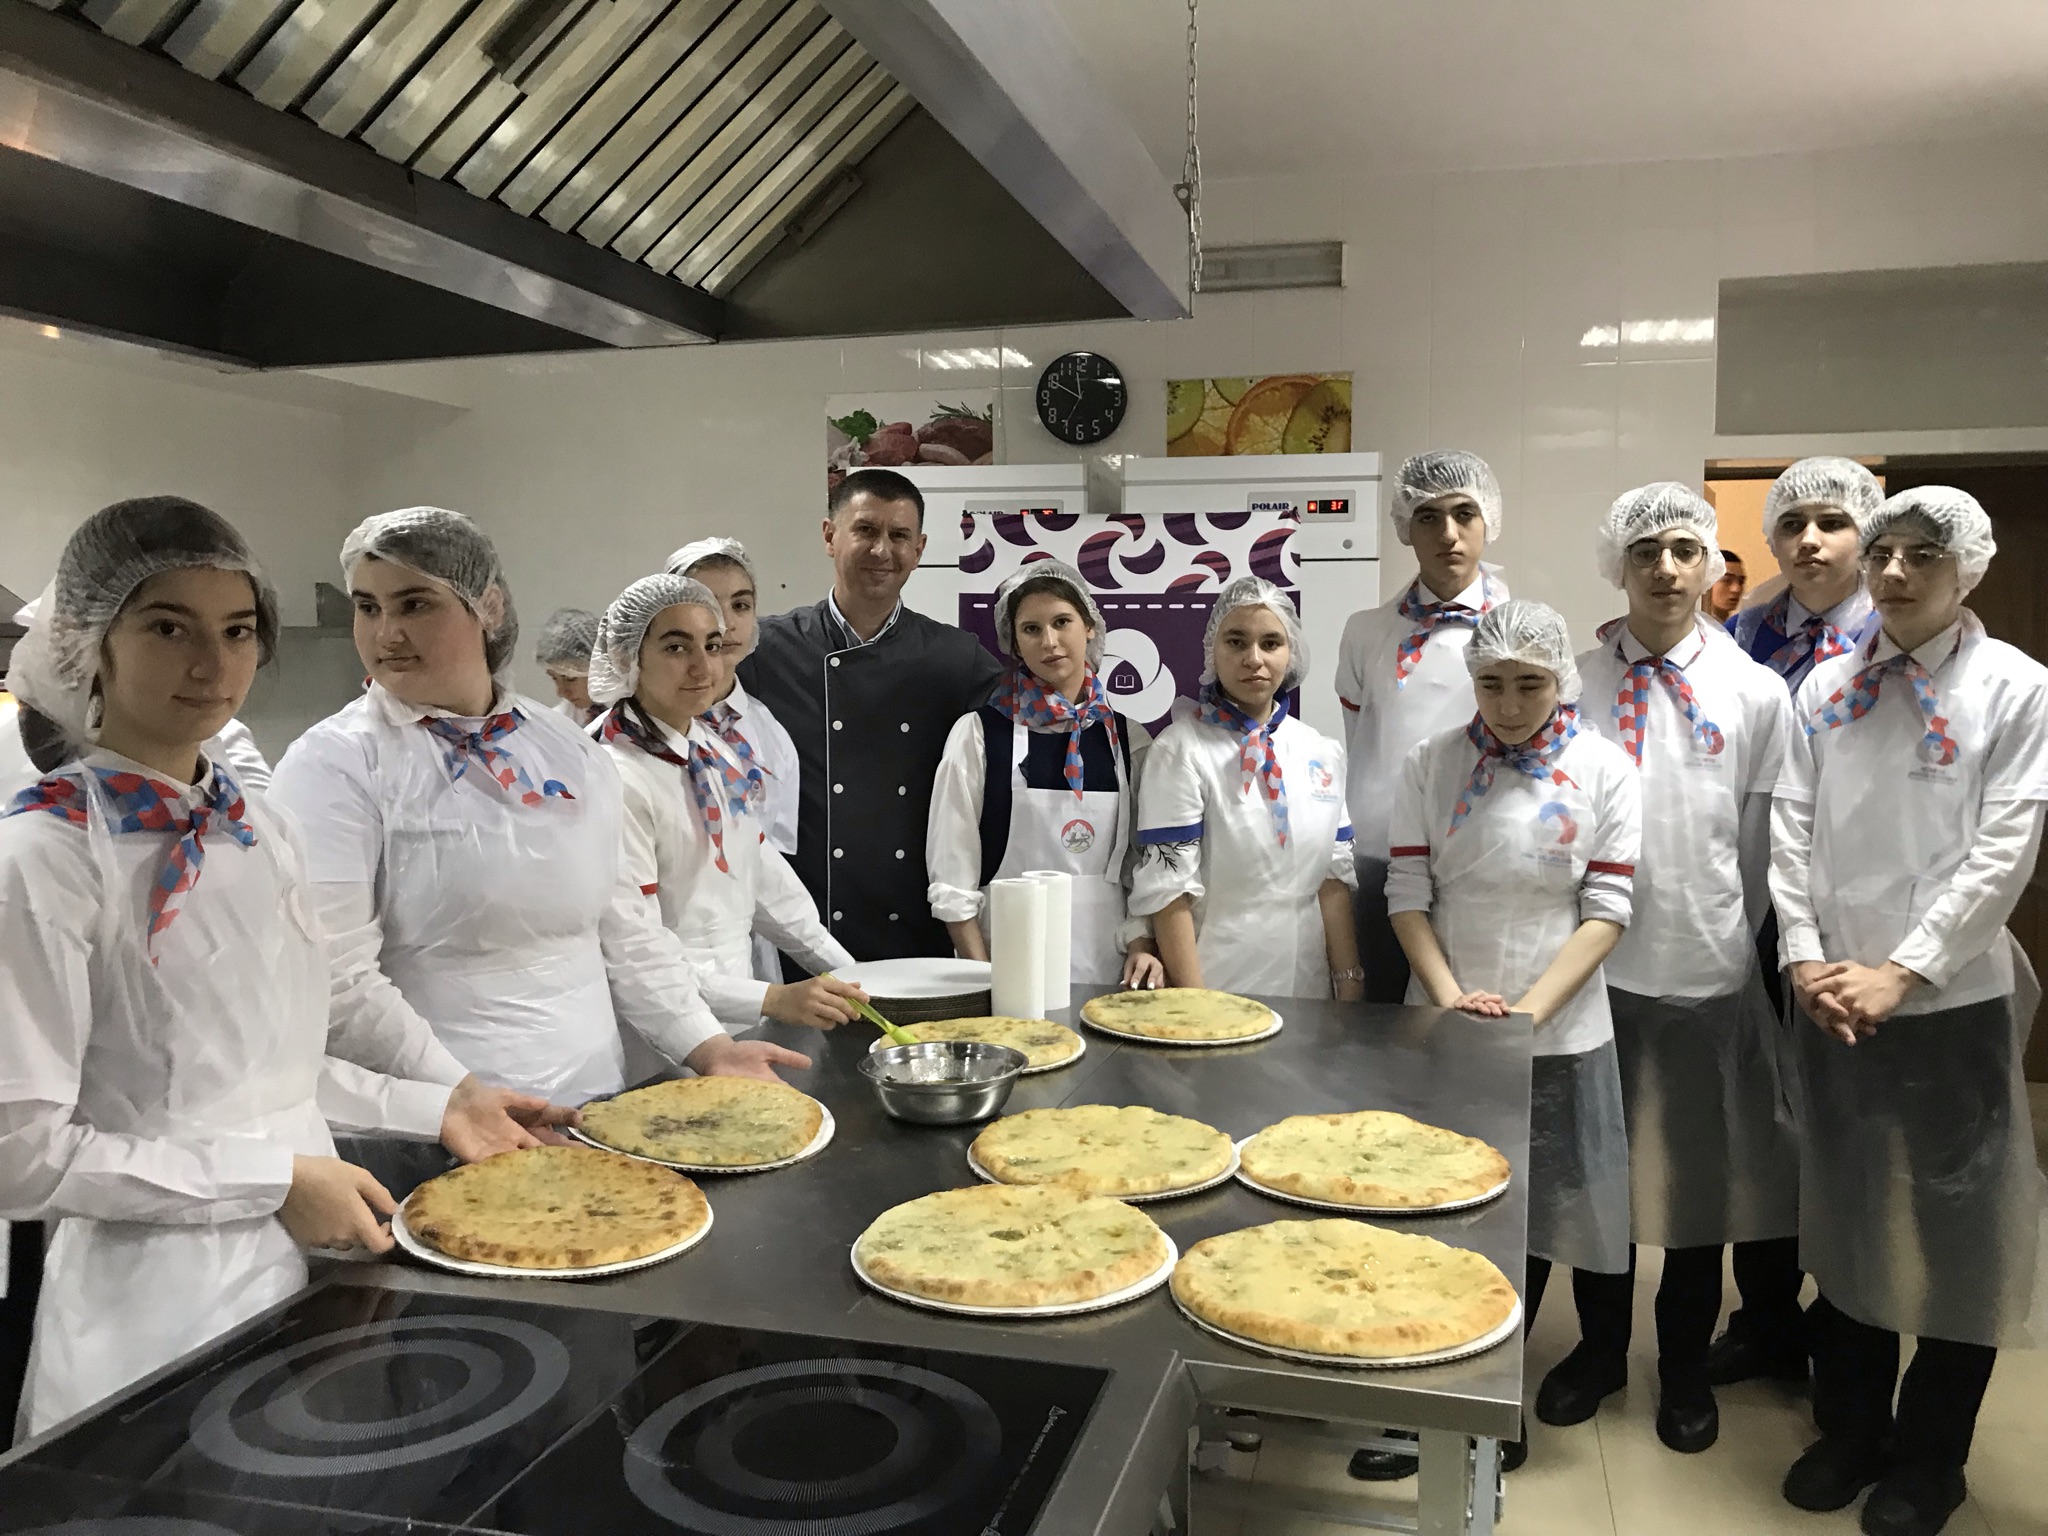 Регионального отделения РДШ РСО – Алания в рамках Всероссийского проекта РДШ «Шеф в школе» прошёл  в мастер-классе по изготовлению осетинских пирогов